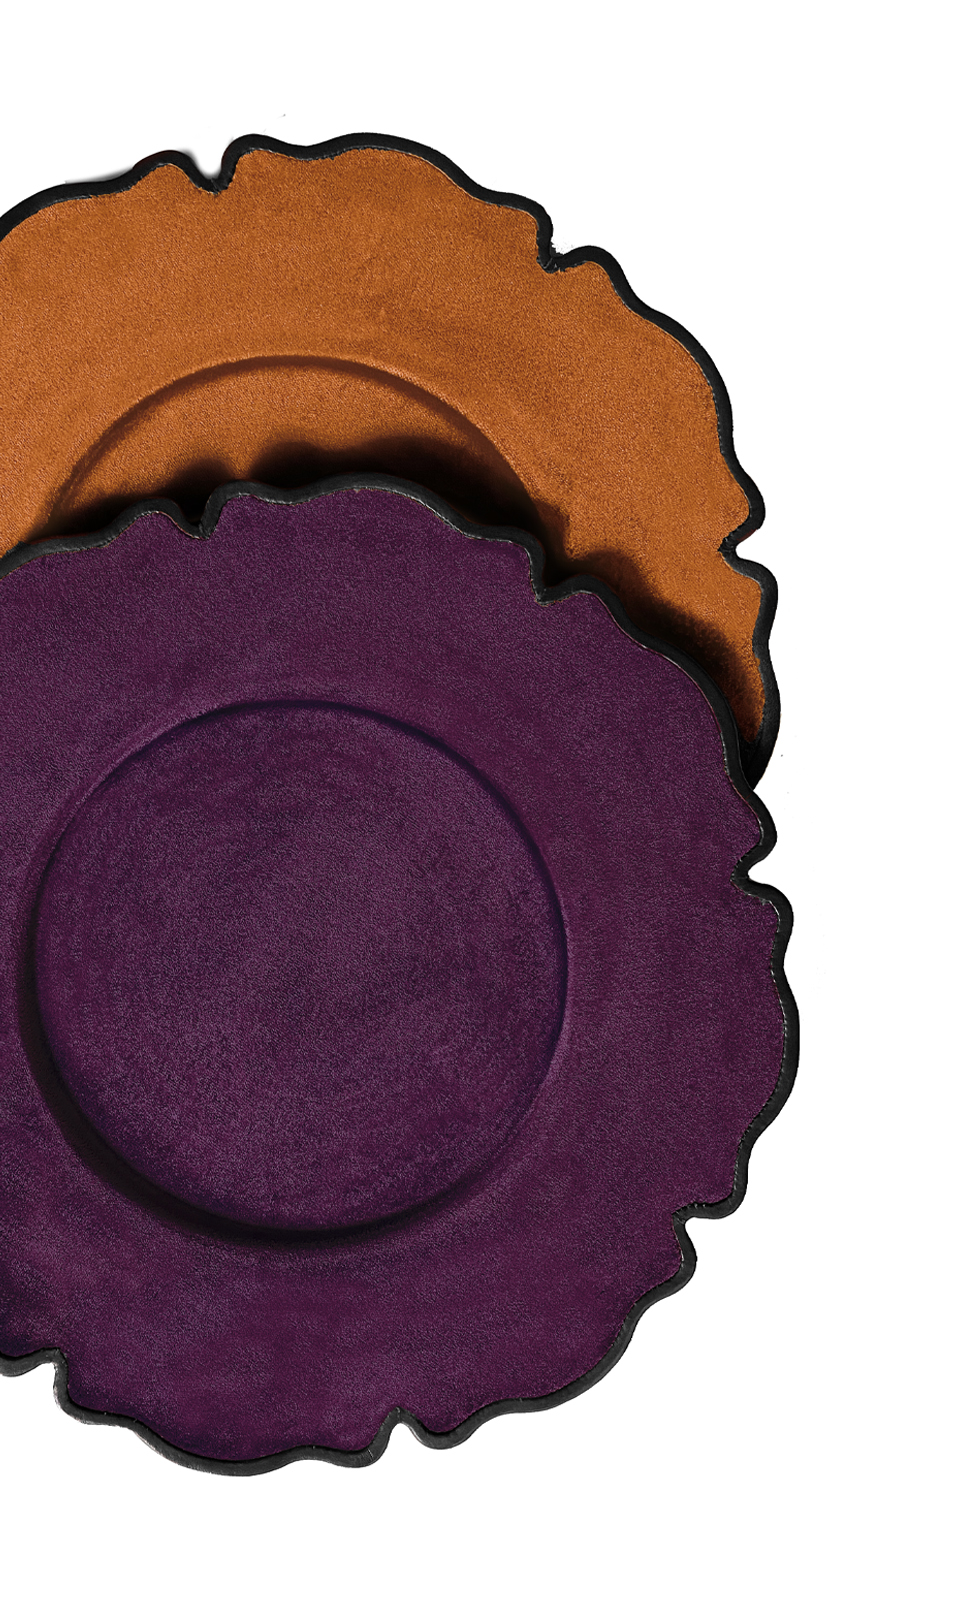 Ibisco est un dessous d’assiette en cuir ou velours, en forme de fleur. Cet objet figure dans le catalogue Promemoria | Promemoria